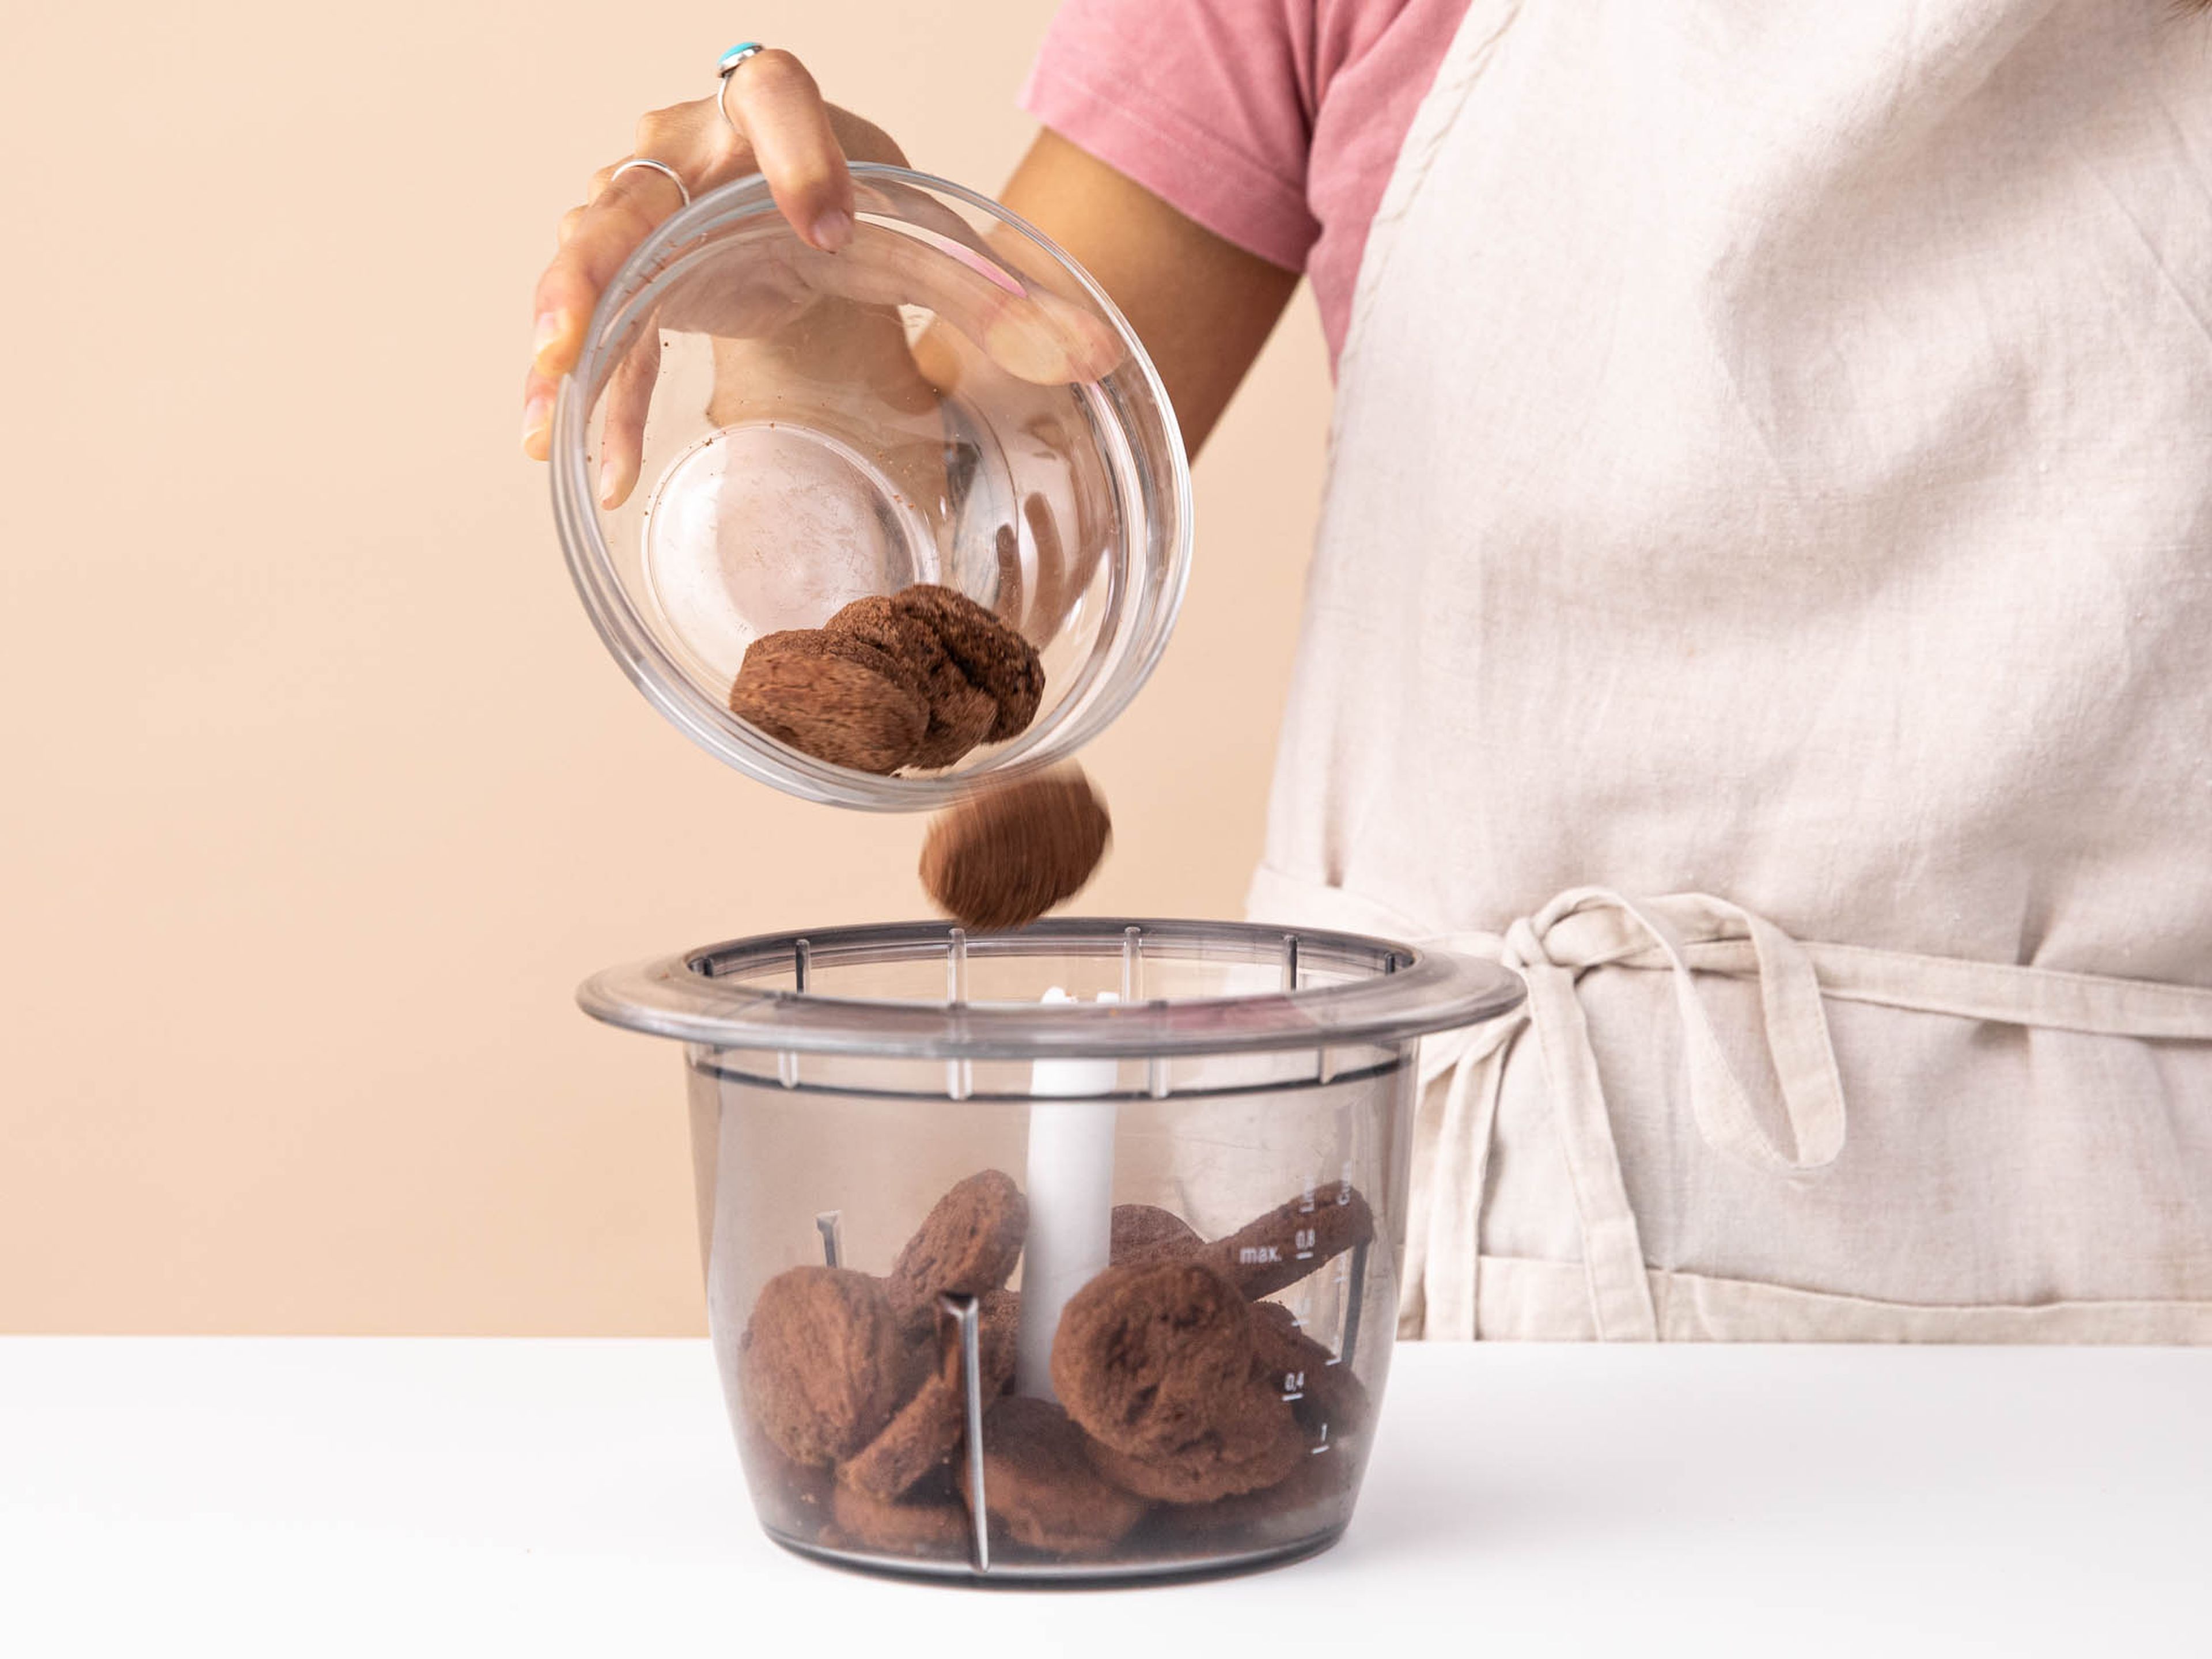 Schokoladenkekse in einem Zerkleinerer mit der Pulsfunktion zu einem groben Pulver verarbeiten. Die zerkleinerten Kekse in eine Schüssel geben.